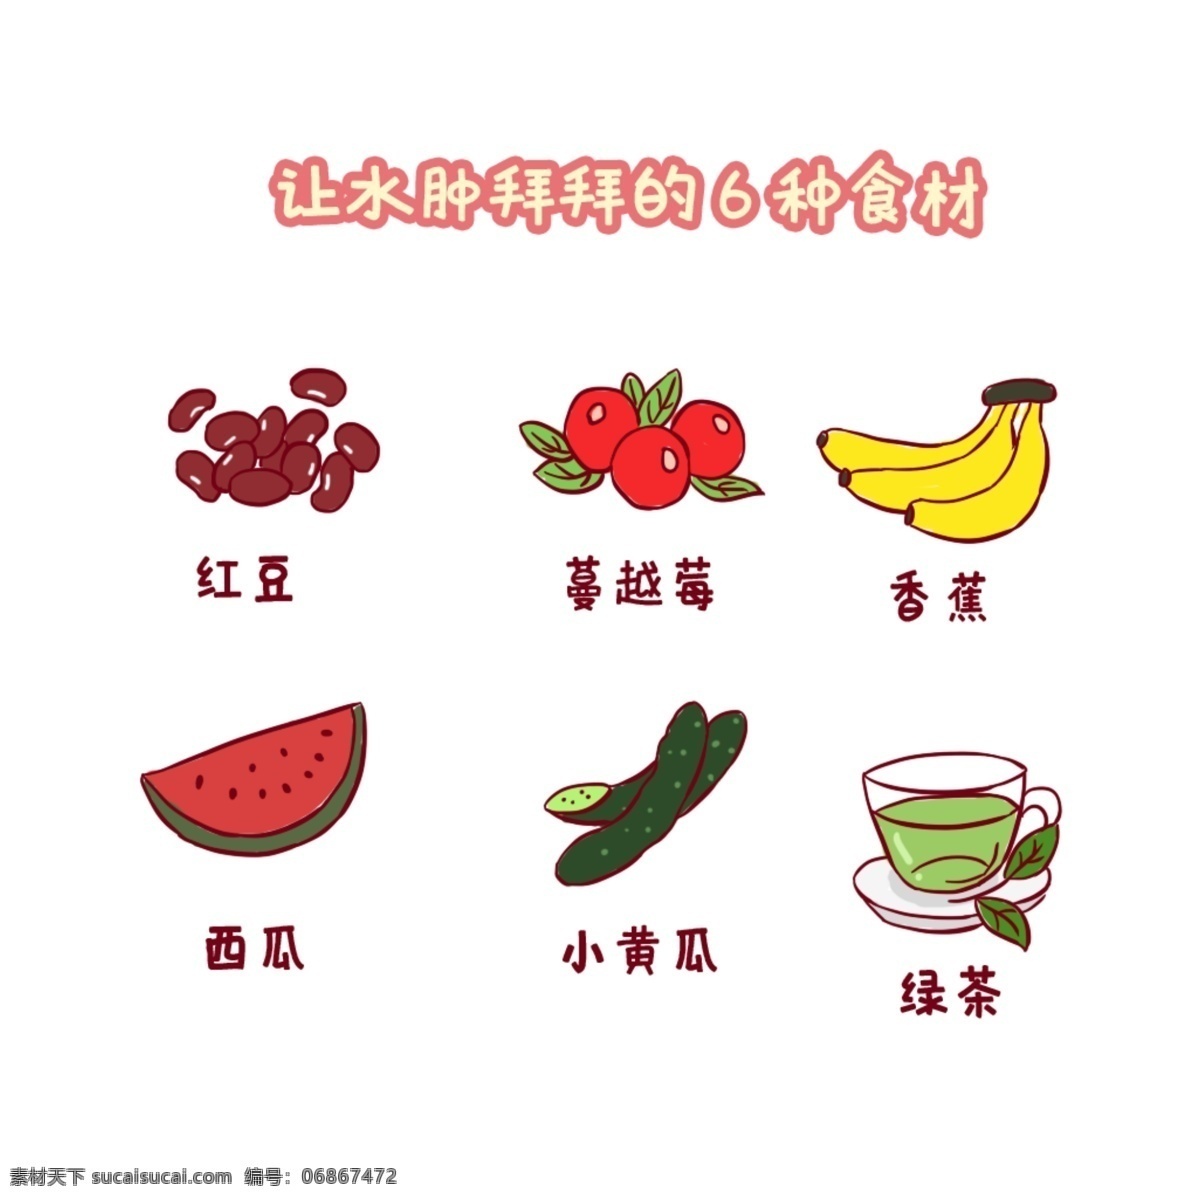 消除 水肿 六 种 食物 手绘 卡通 蔬菜 营养 小图标 水果 单个 元素 矢量 素